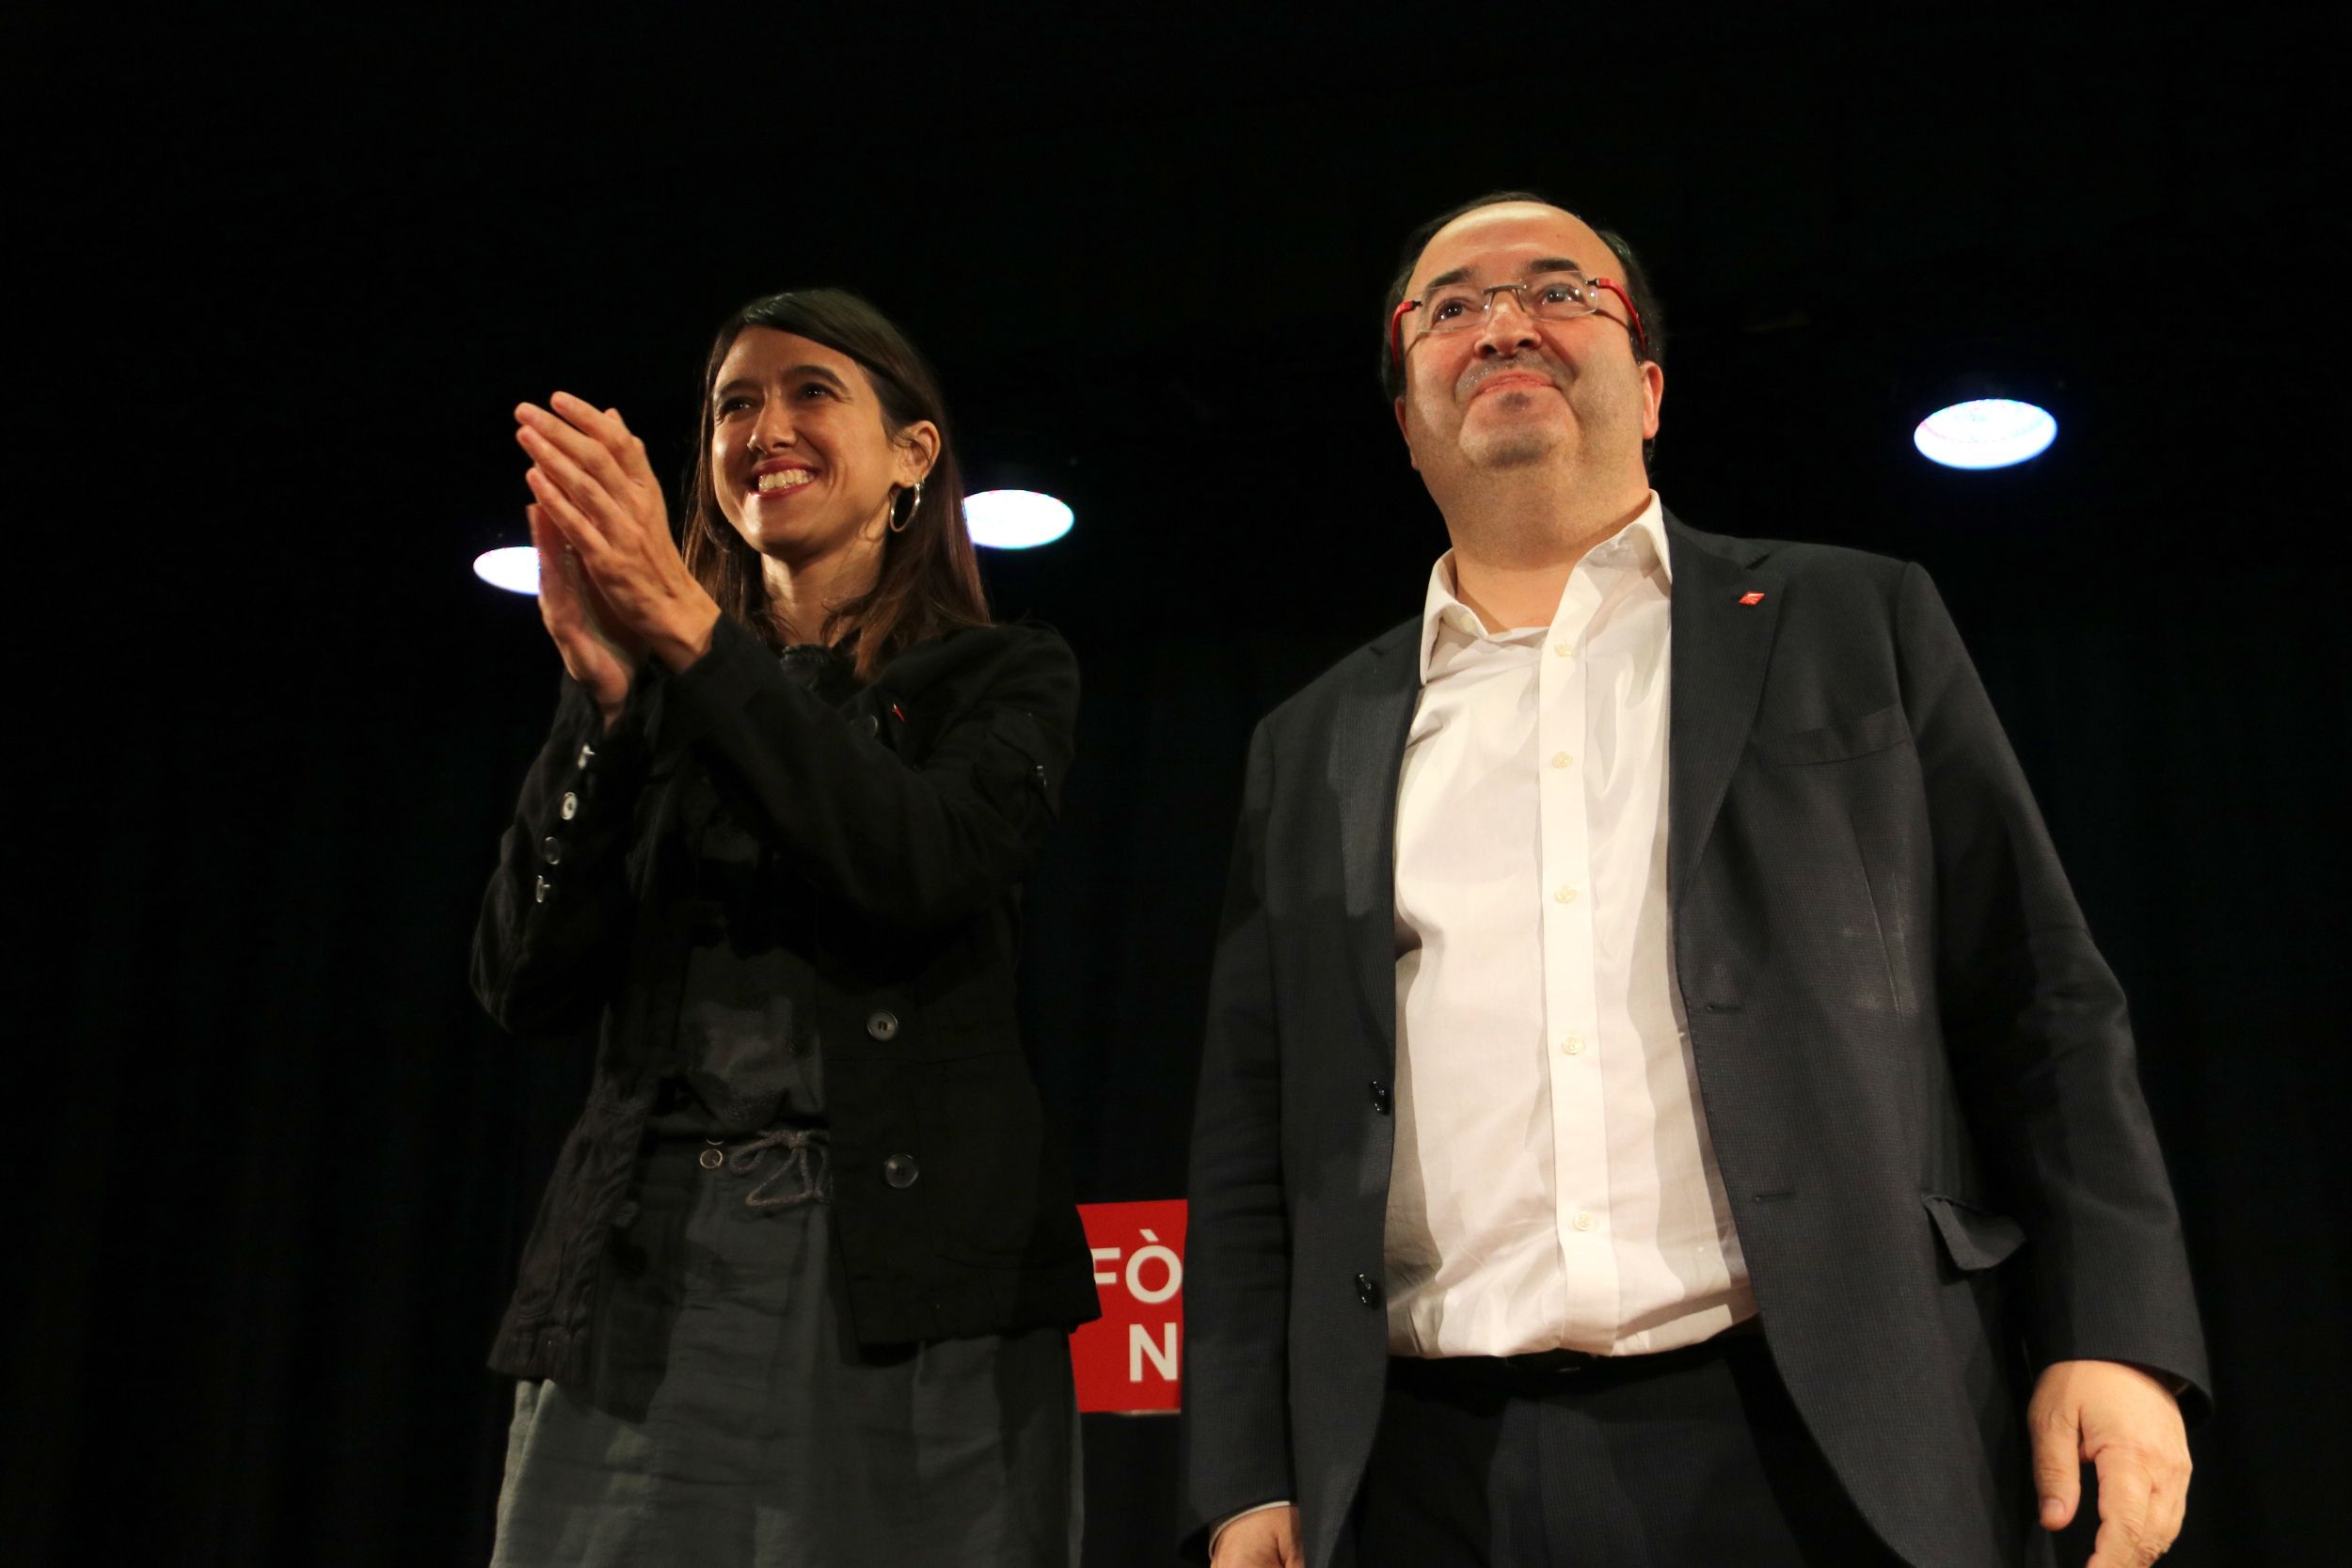 El PSC decide el pulso Iceta-Parlon en pleno debate sobre el 'no' a Rajoy